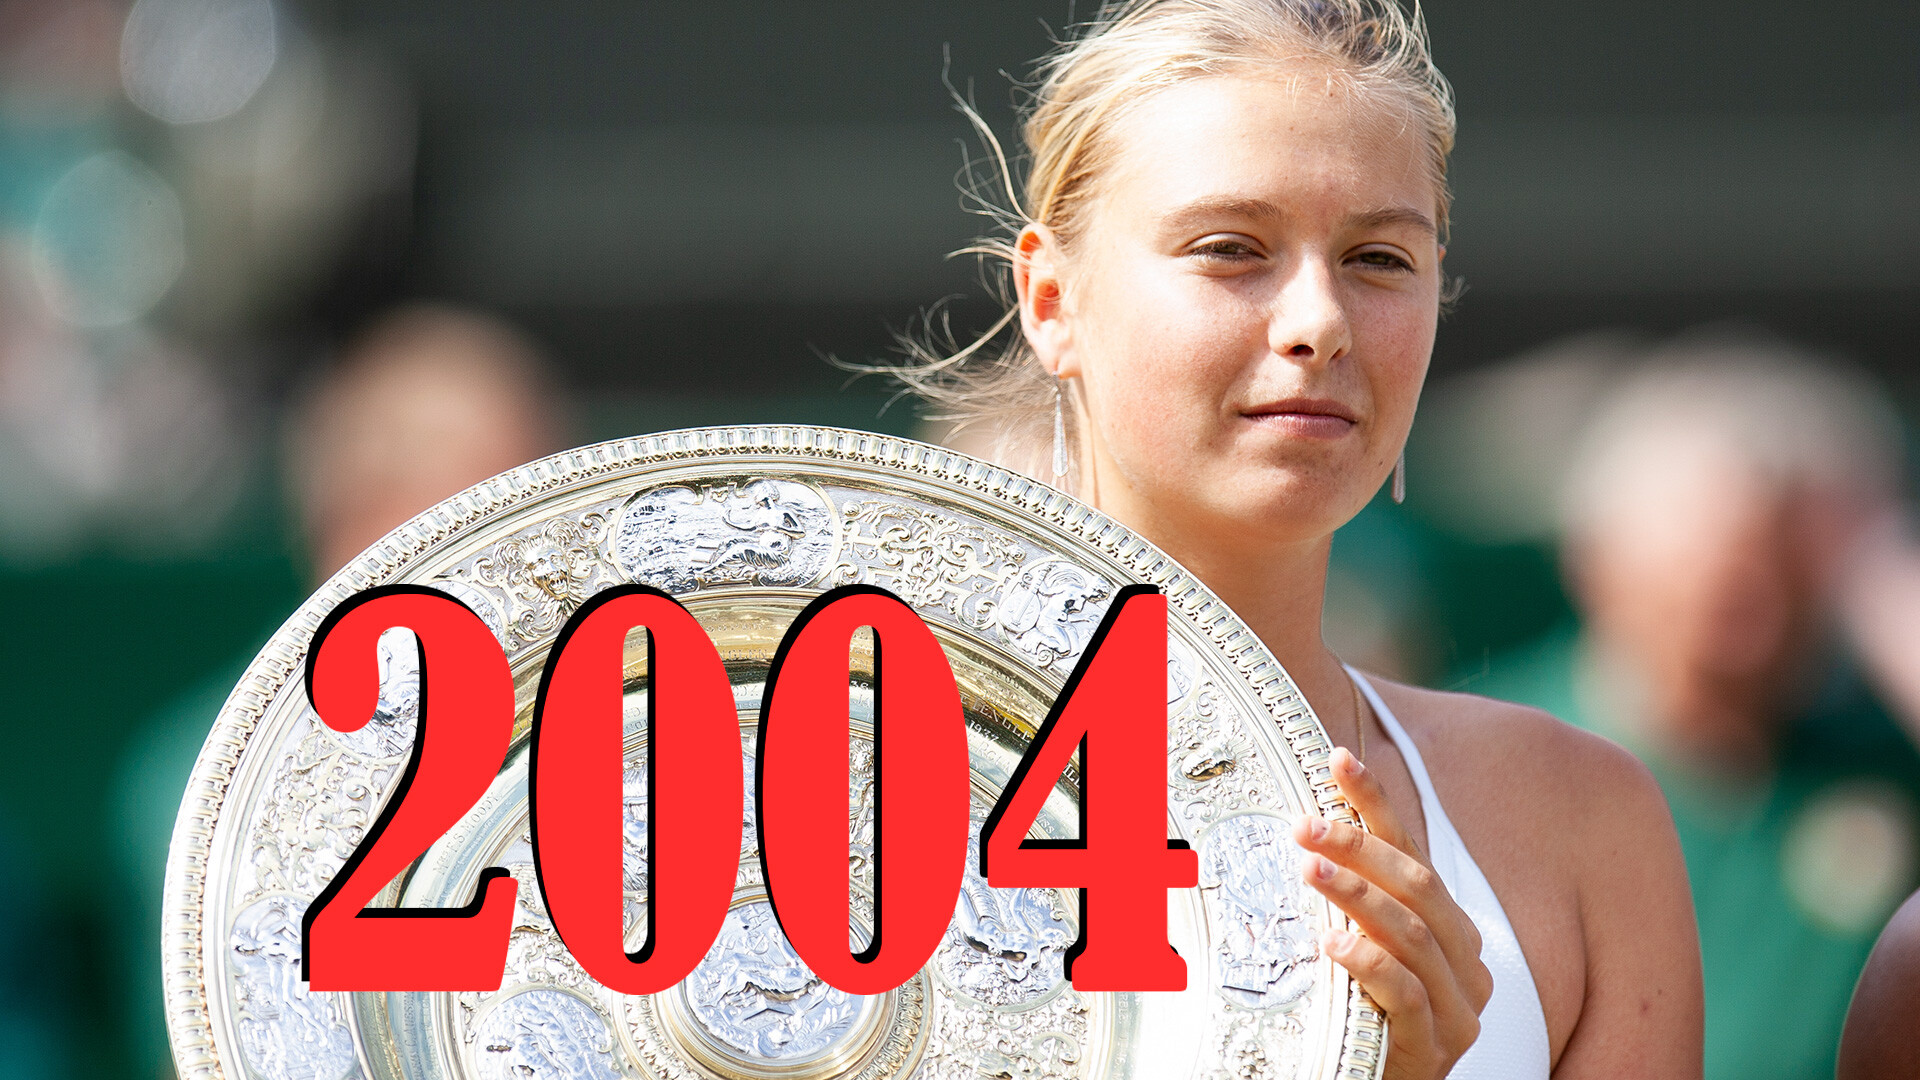 La tenista María Sharápova se convirtió en la primera mujer rusa que ganó Wimbledon.